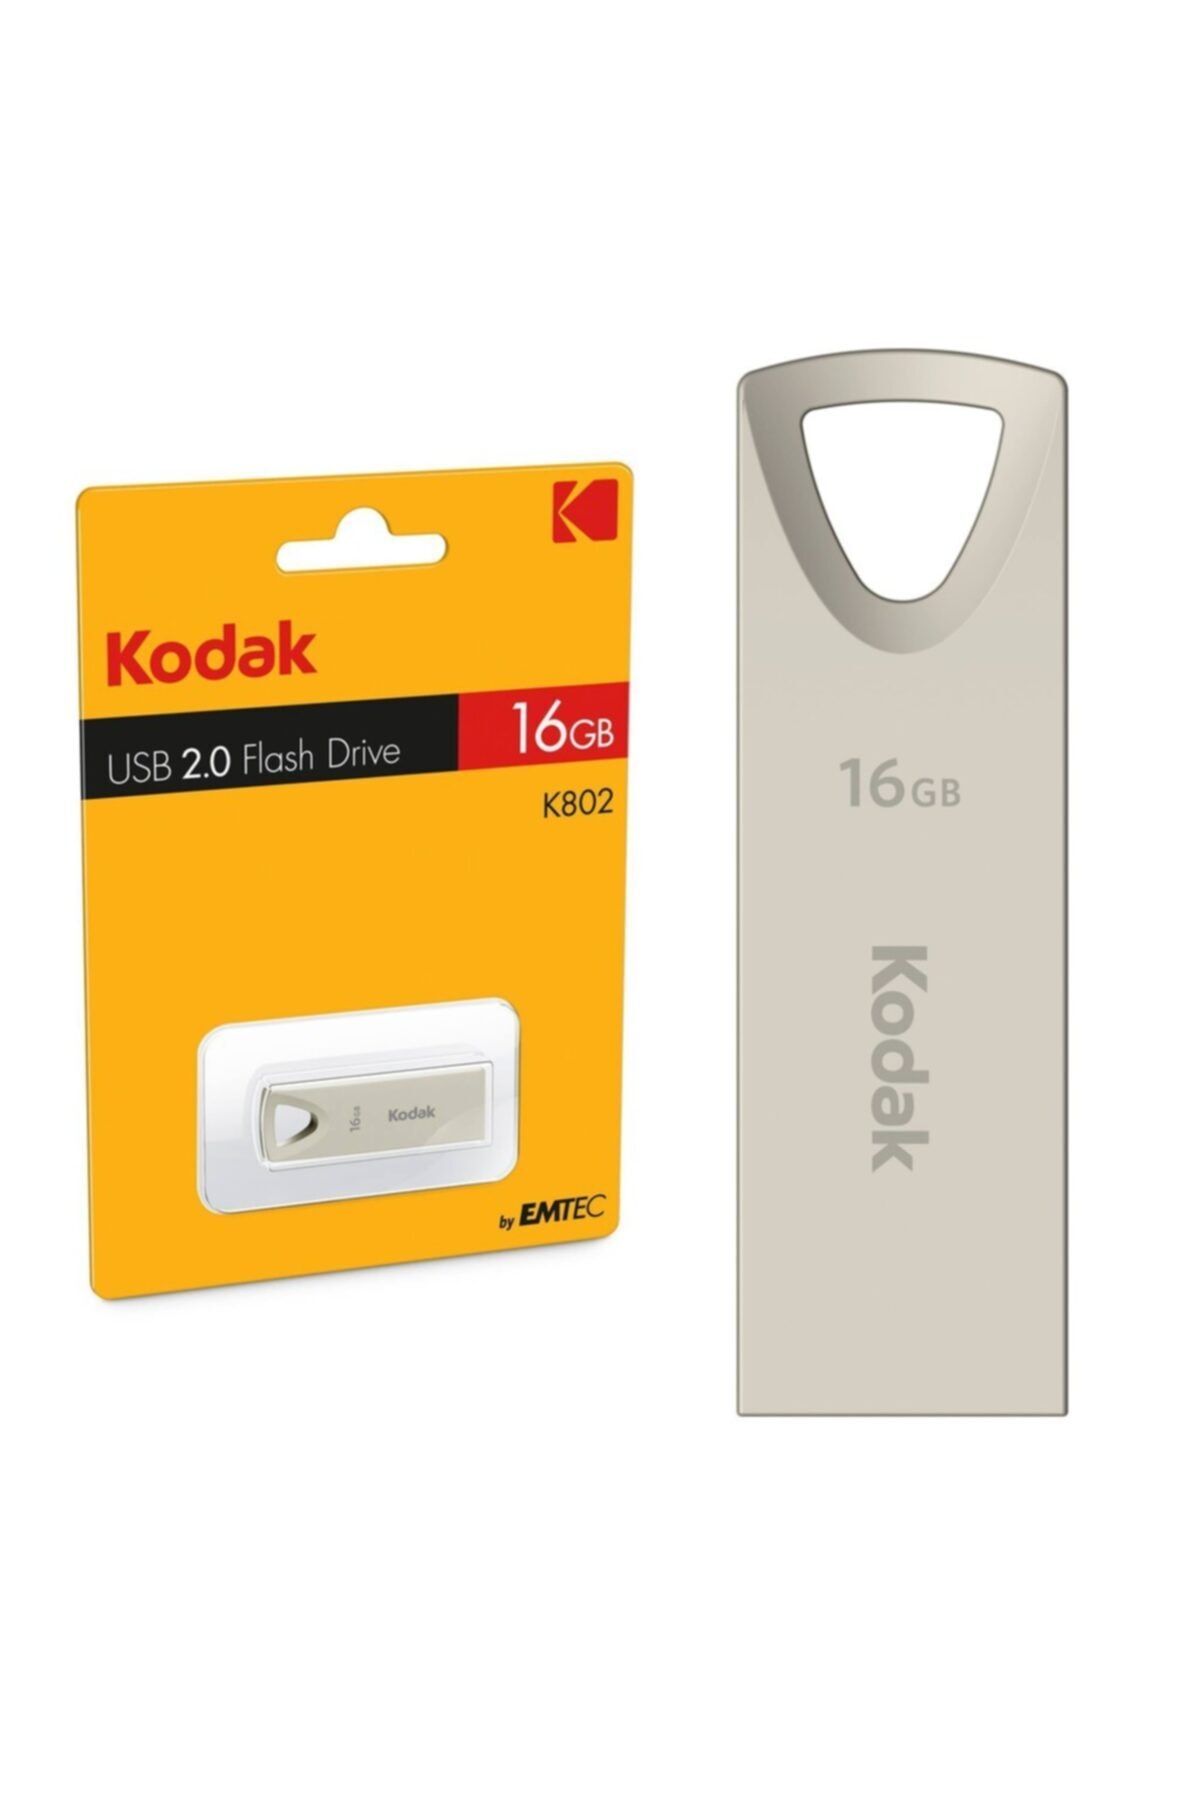 Kodak K802 Usb Flash Drive 2.0 Metal Body Case 16gb